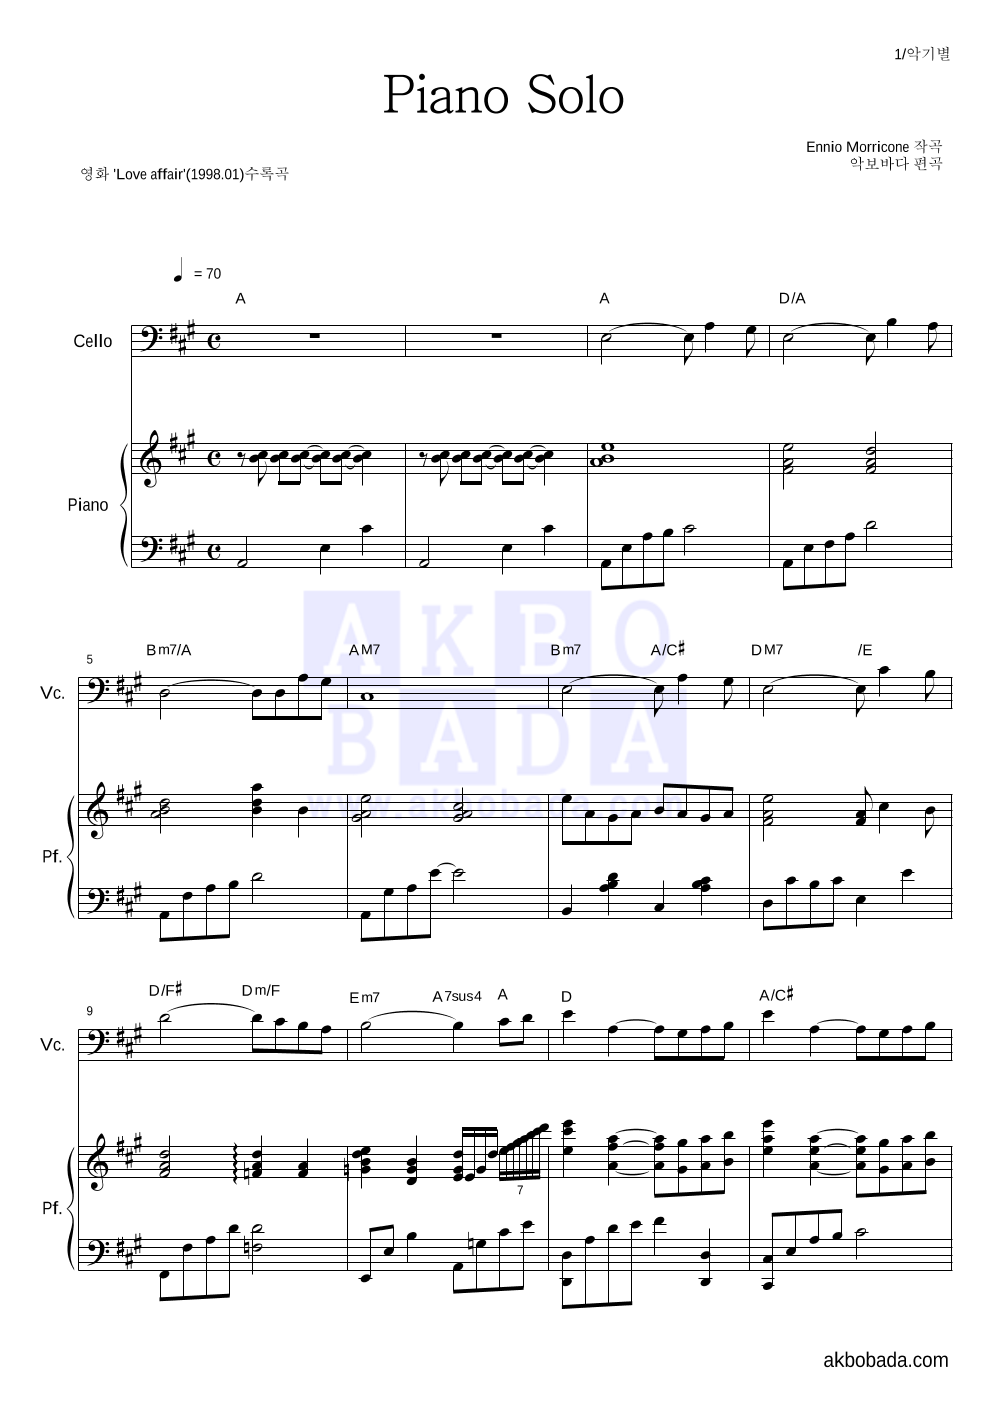 Ennio Morricone - Piano Solo 첼로&피아노 악보 